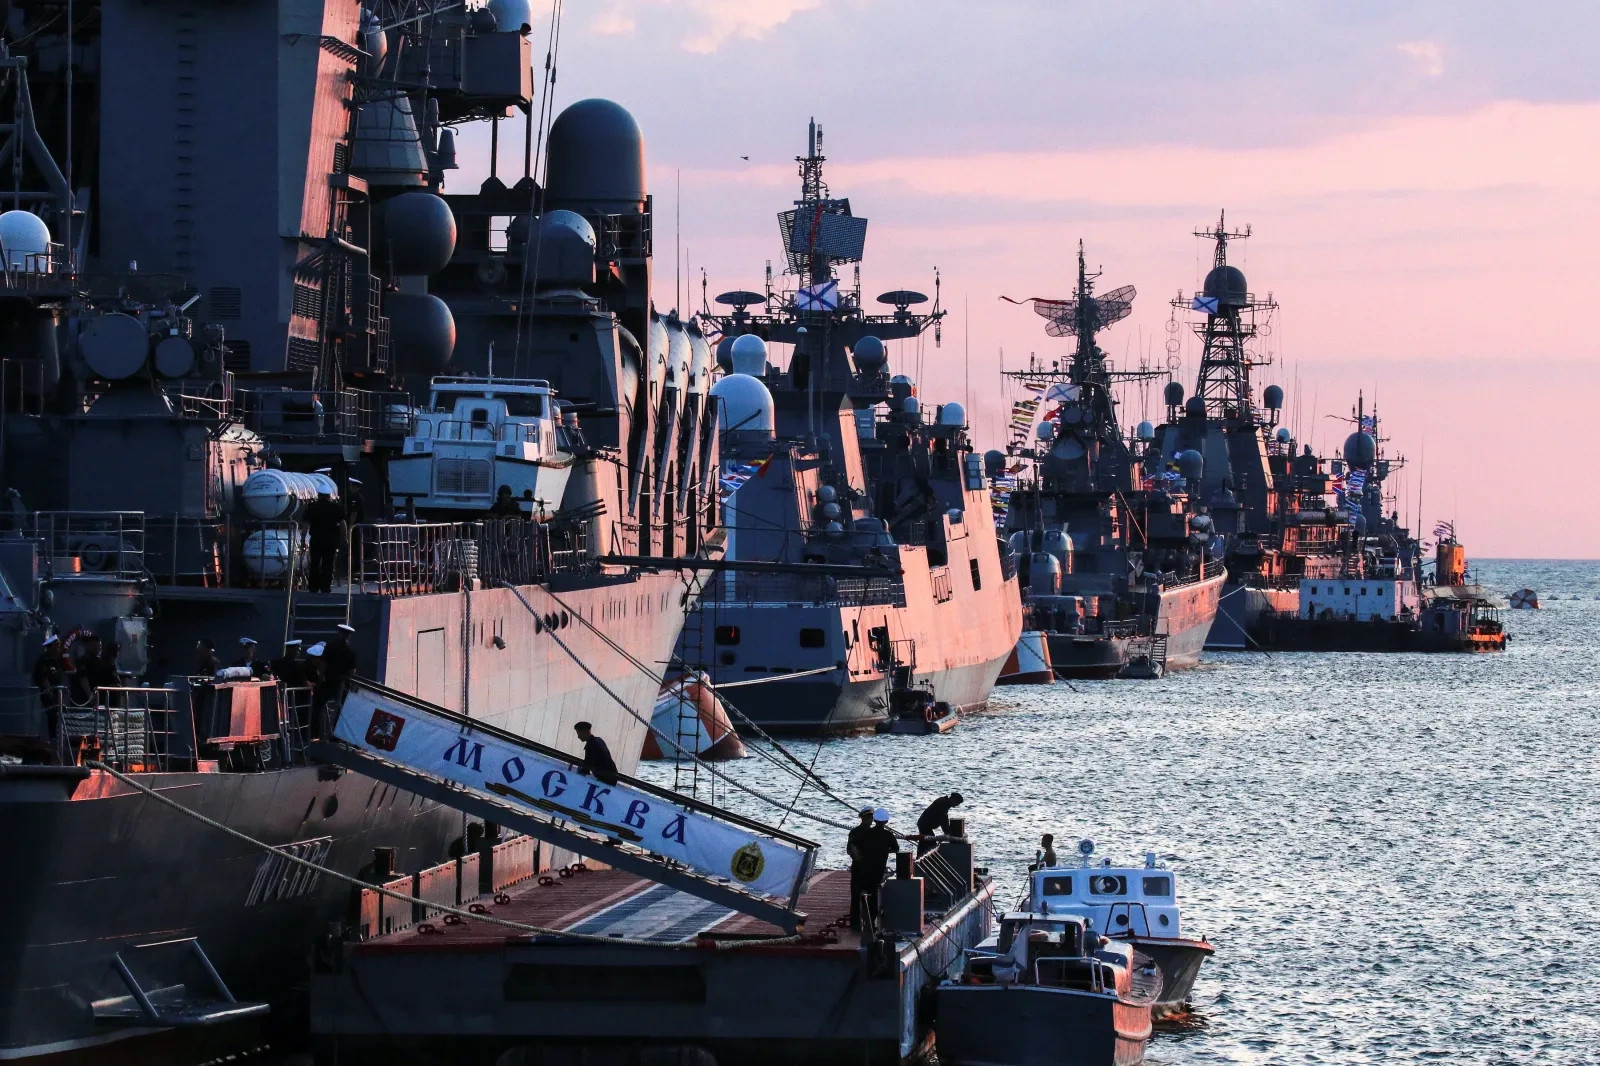 Nhận diện chiến thuật mới sau vụ tấn công nhằm vào Hạm đội Biển Đen của Nga - 2